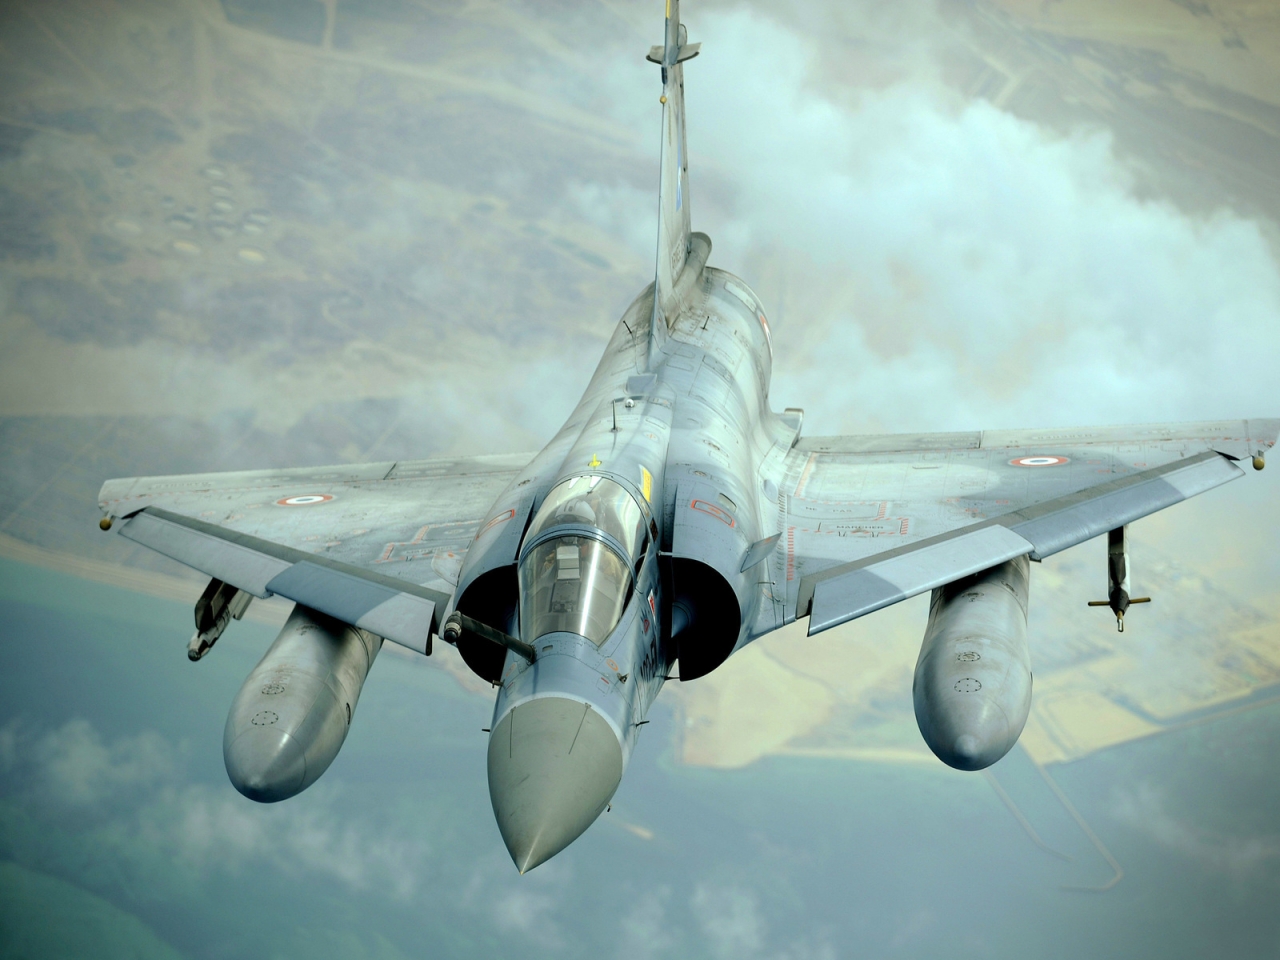 Dassault Mirage 2000 for 1280 x 960 resolution